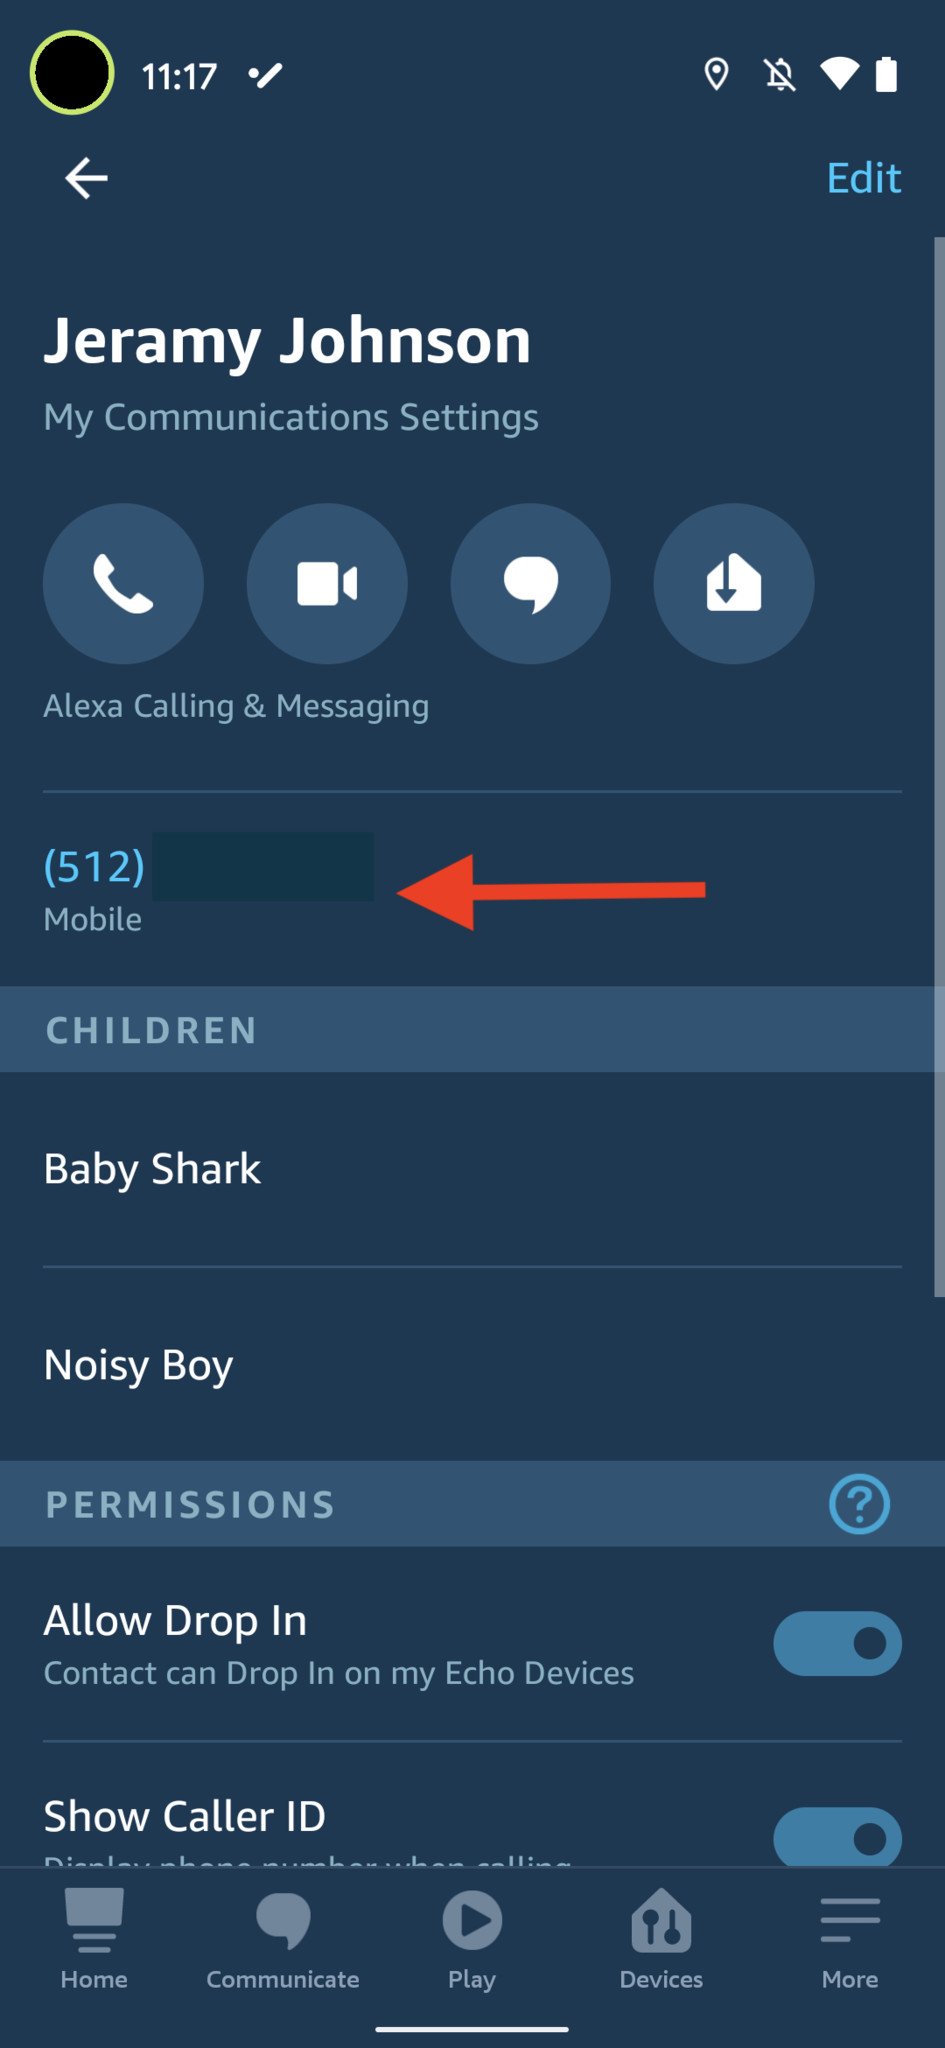 Configurar Alexa Calling